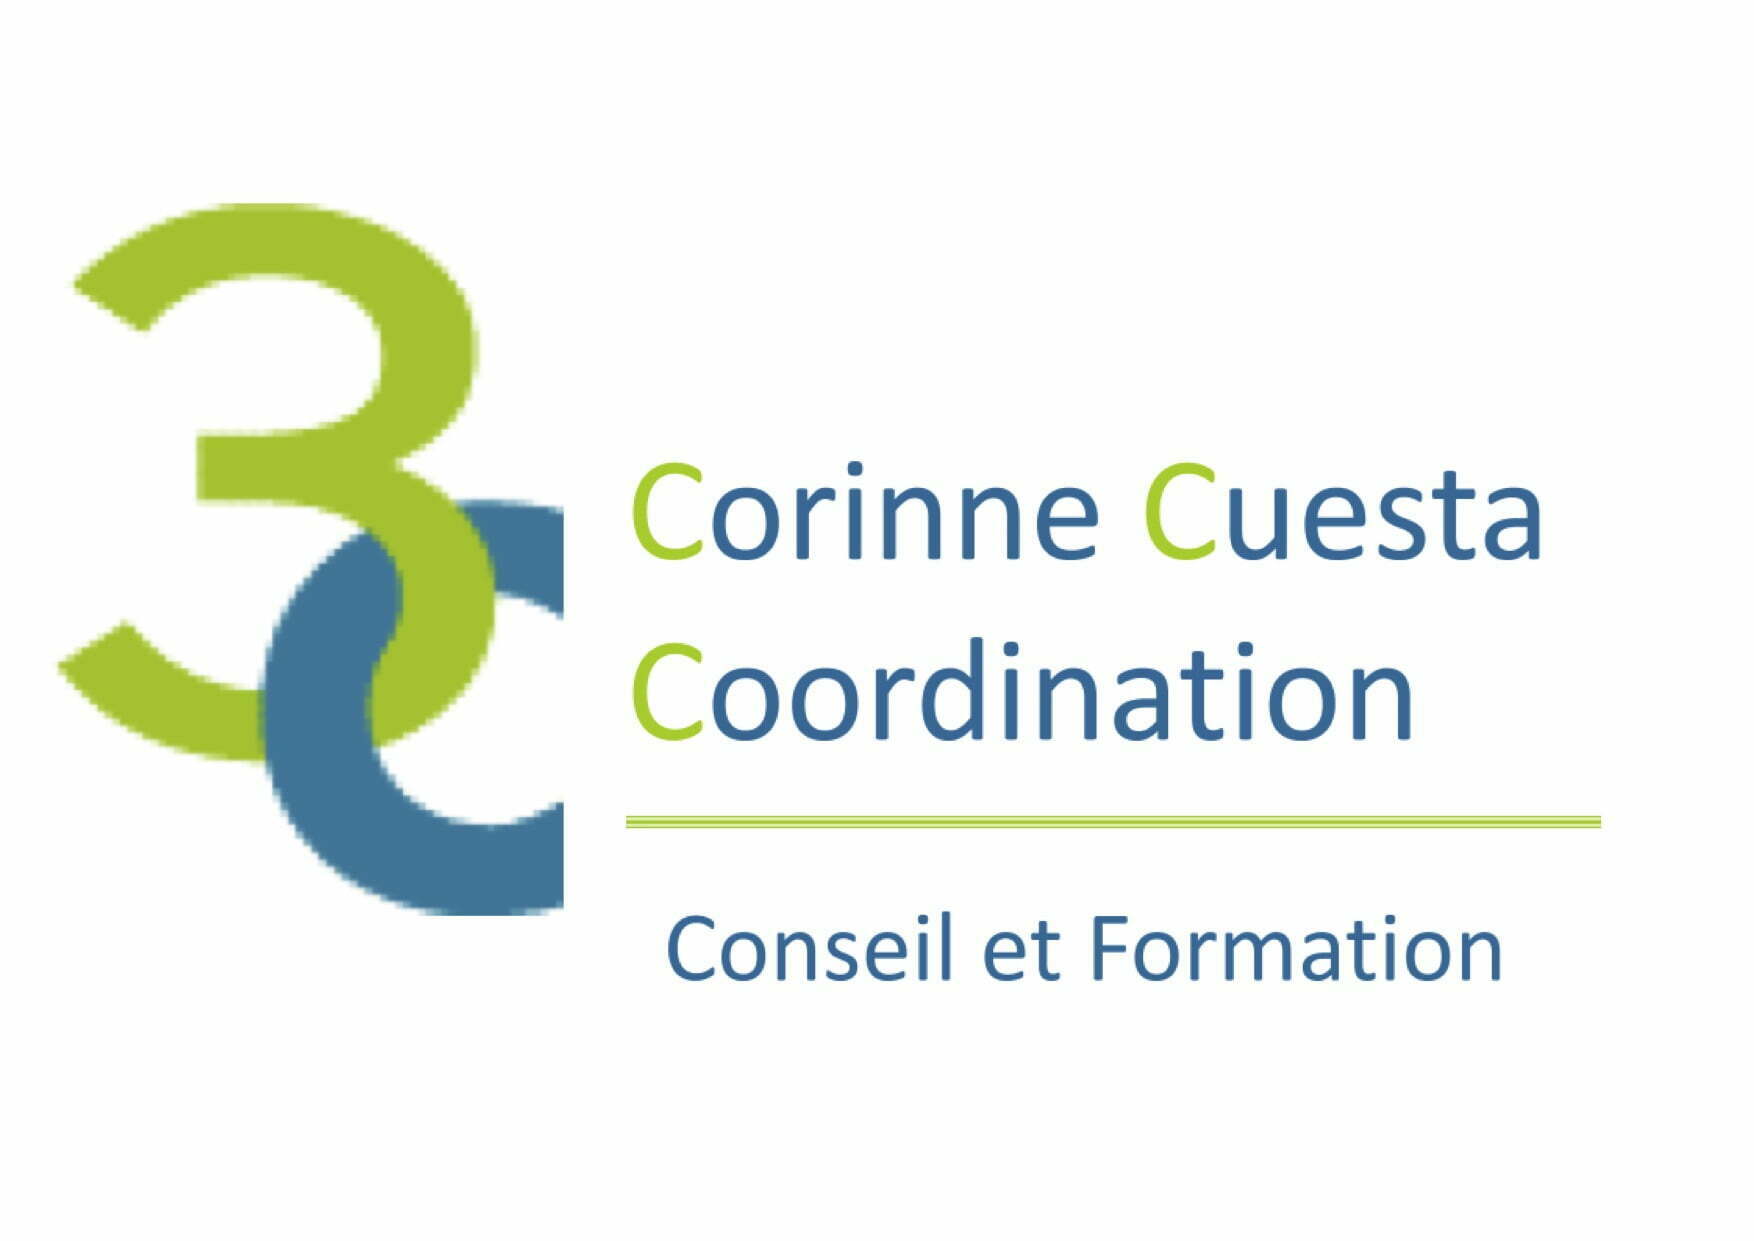 Corinne Cuesta Coordination